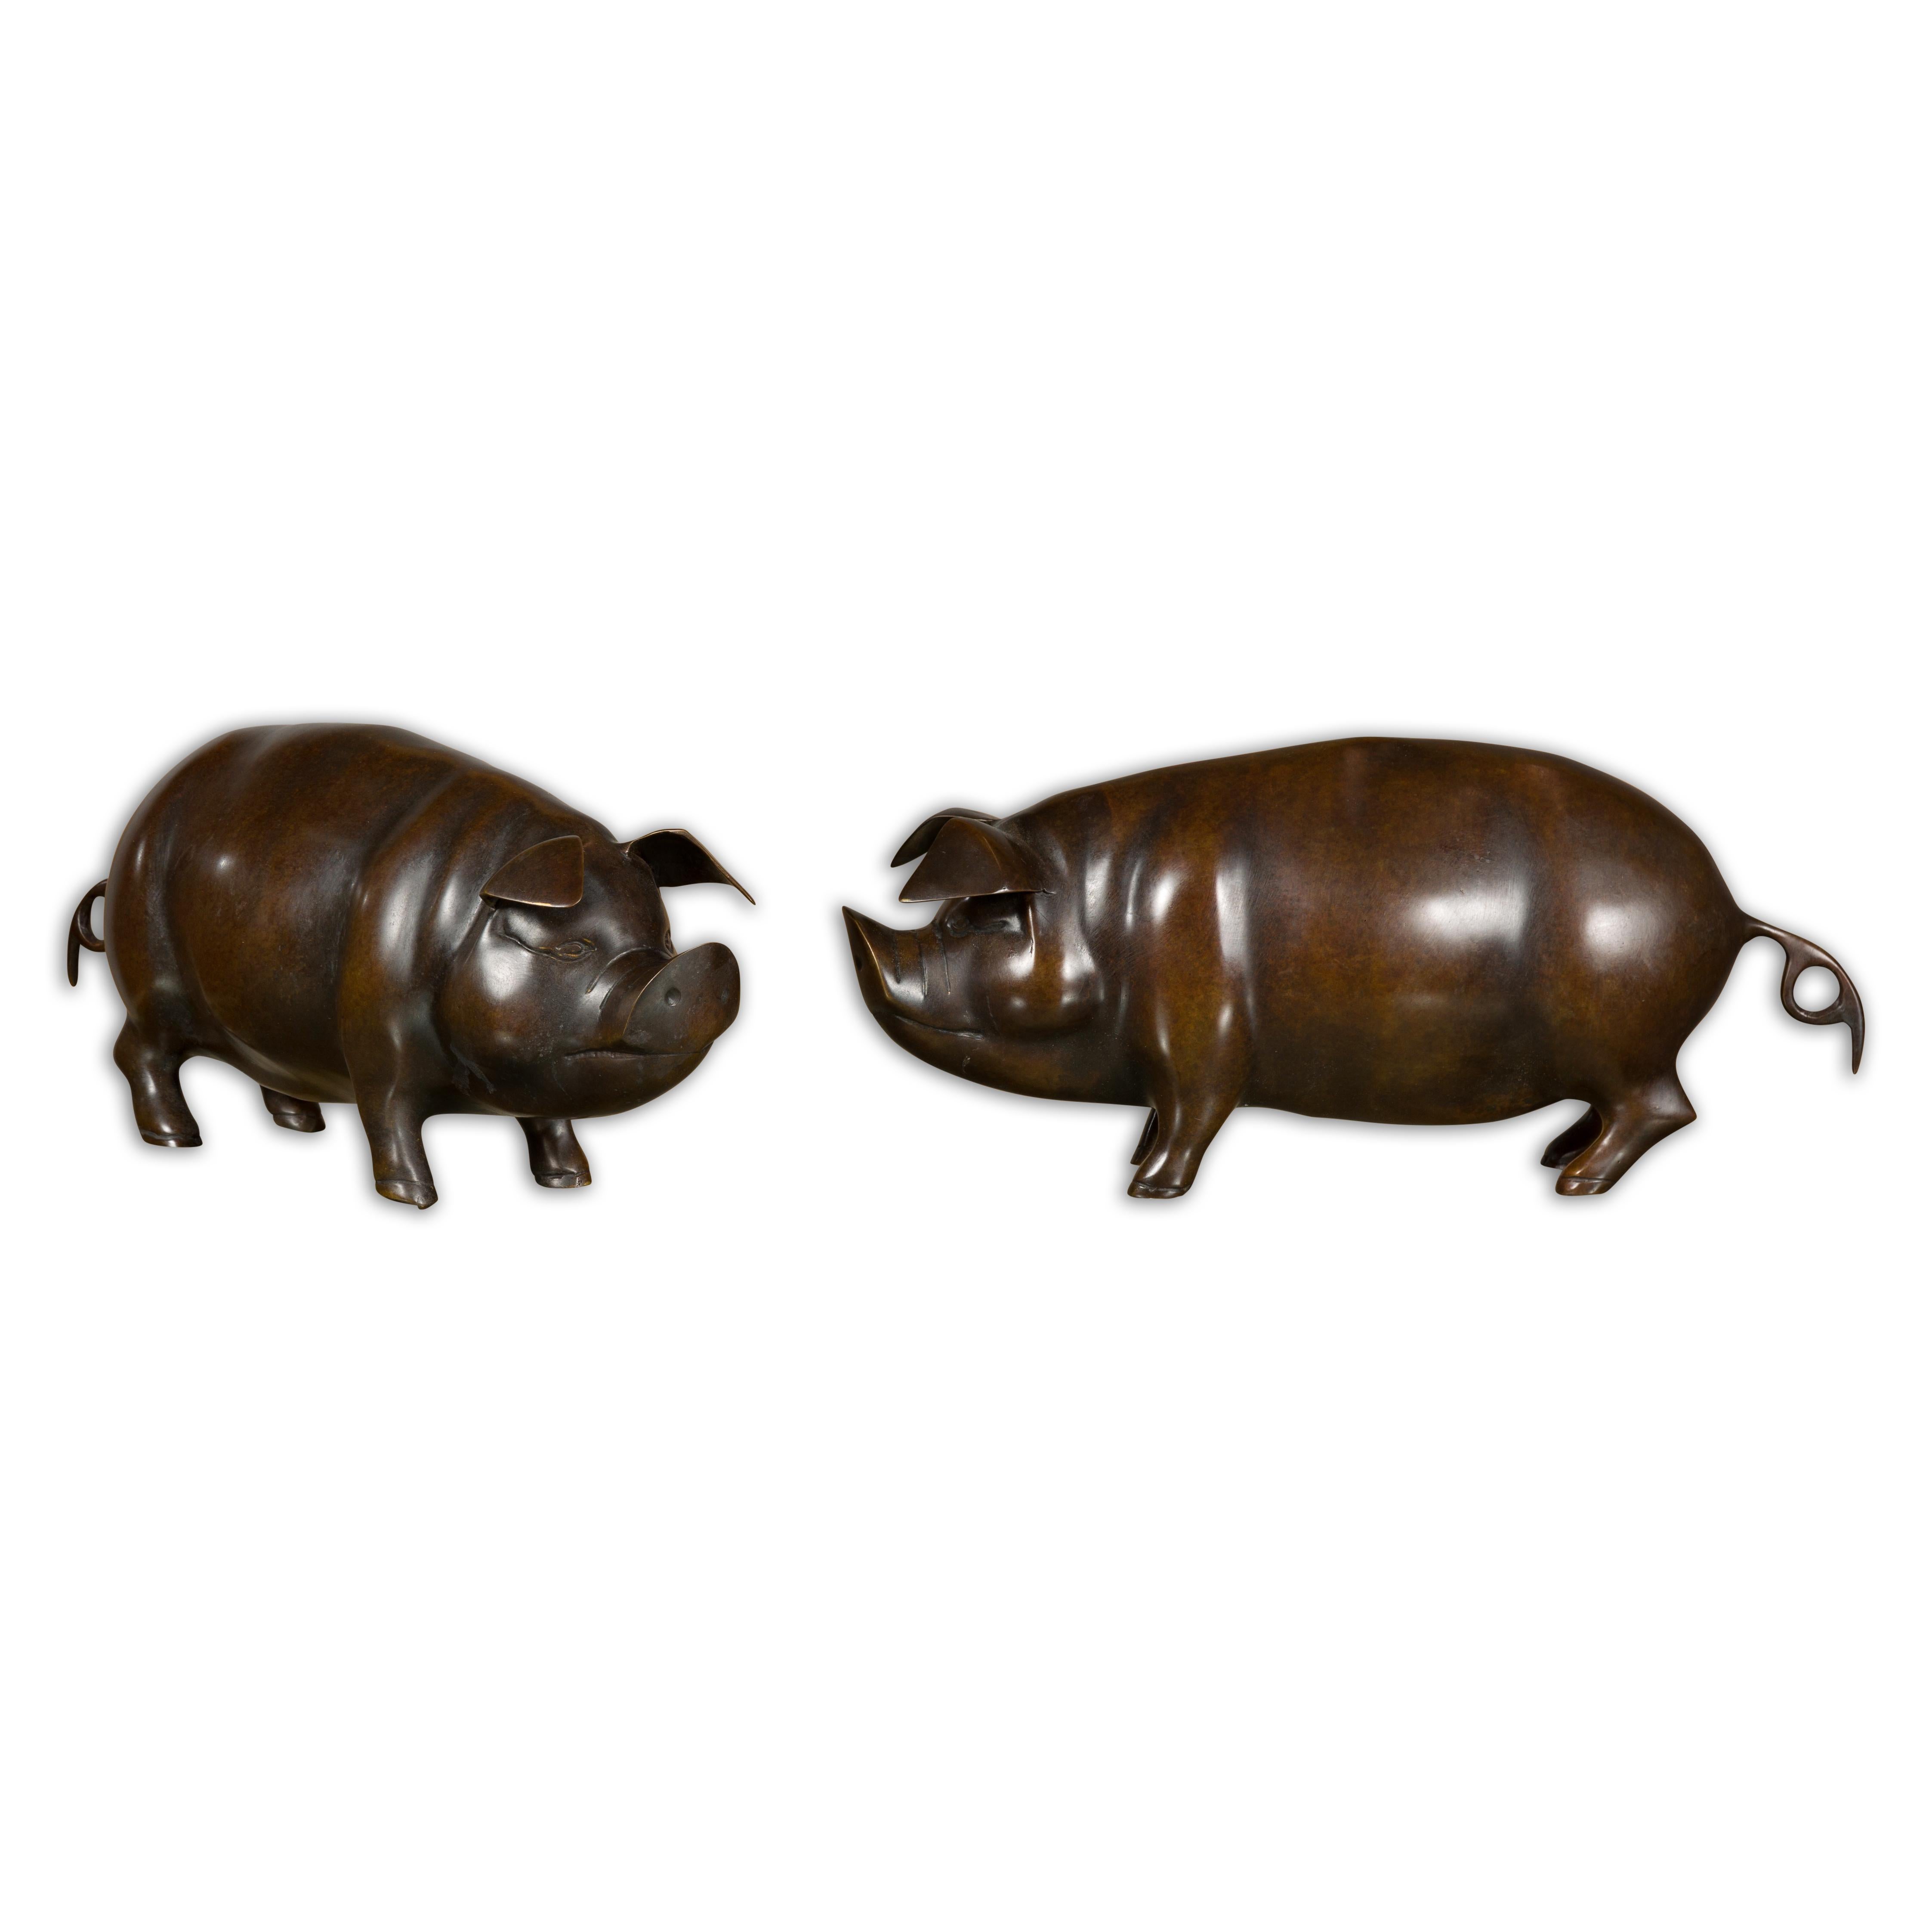 Paire de sculptures de cochons en bronze américain, datant de 1950-1970, à la patine foncée. Ces charmantes sculptures de cochons en bronze américain, datant du milieu du XXe siècle, dégagent du caractère et de la fantaisie dans leurs petites formes